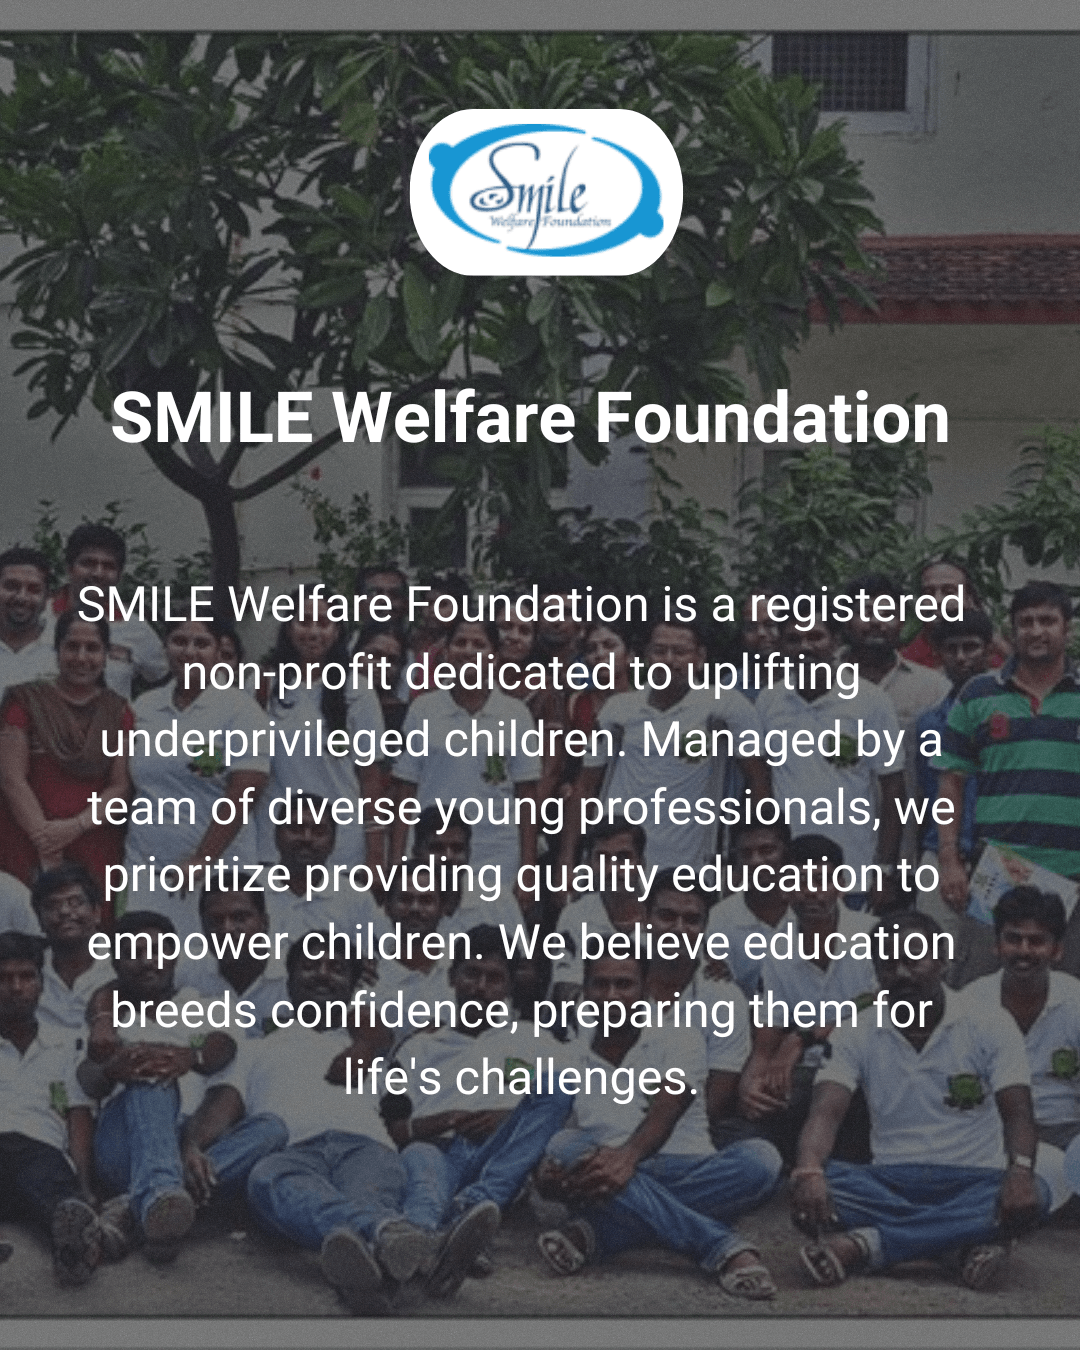 smilewelfarefoundation welfarefoundation